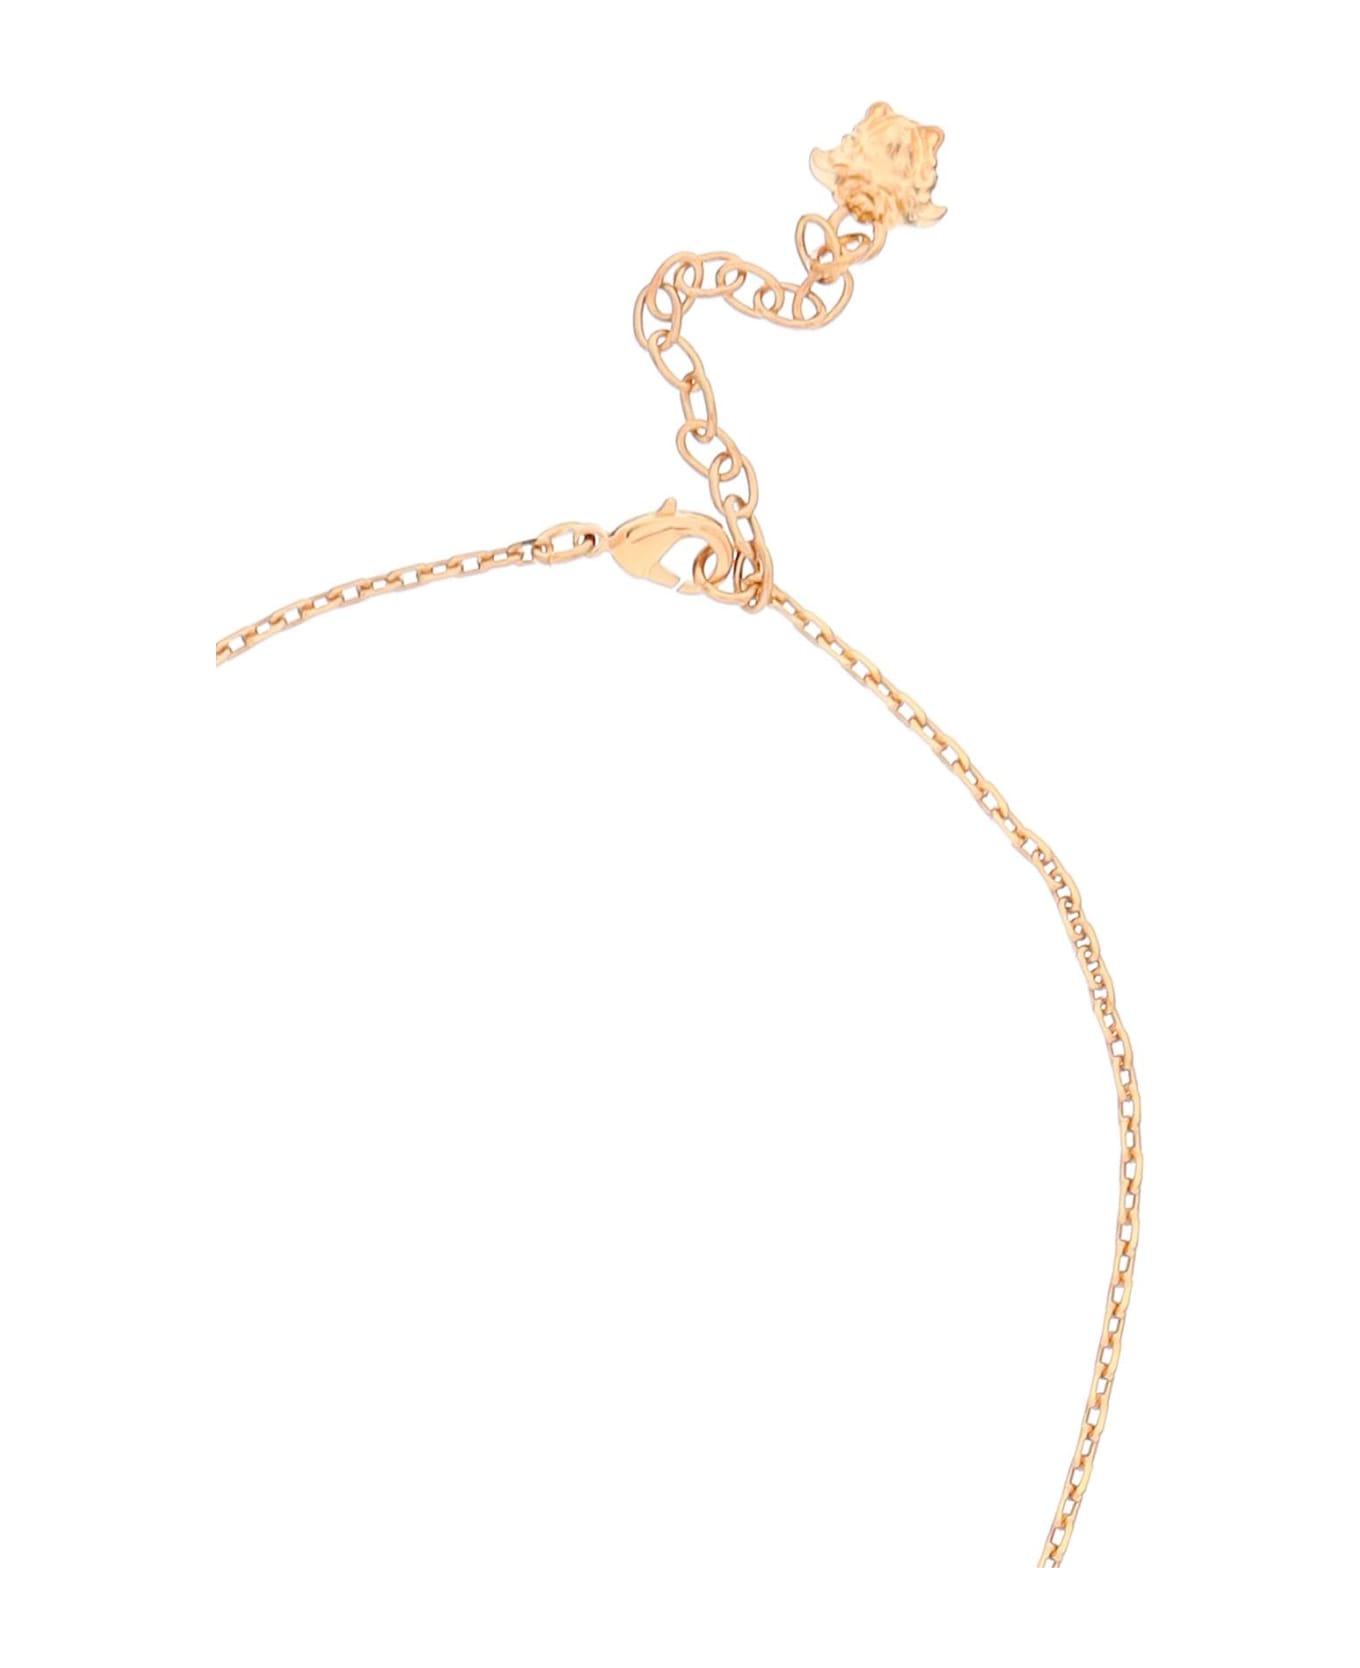 Versace 'la Greca Tag' Necklace - VERSACE GOLD (Gold)